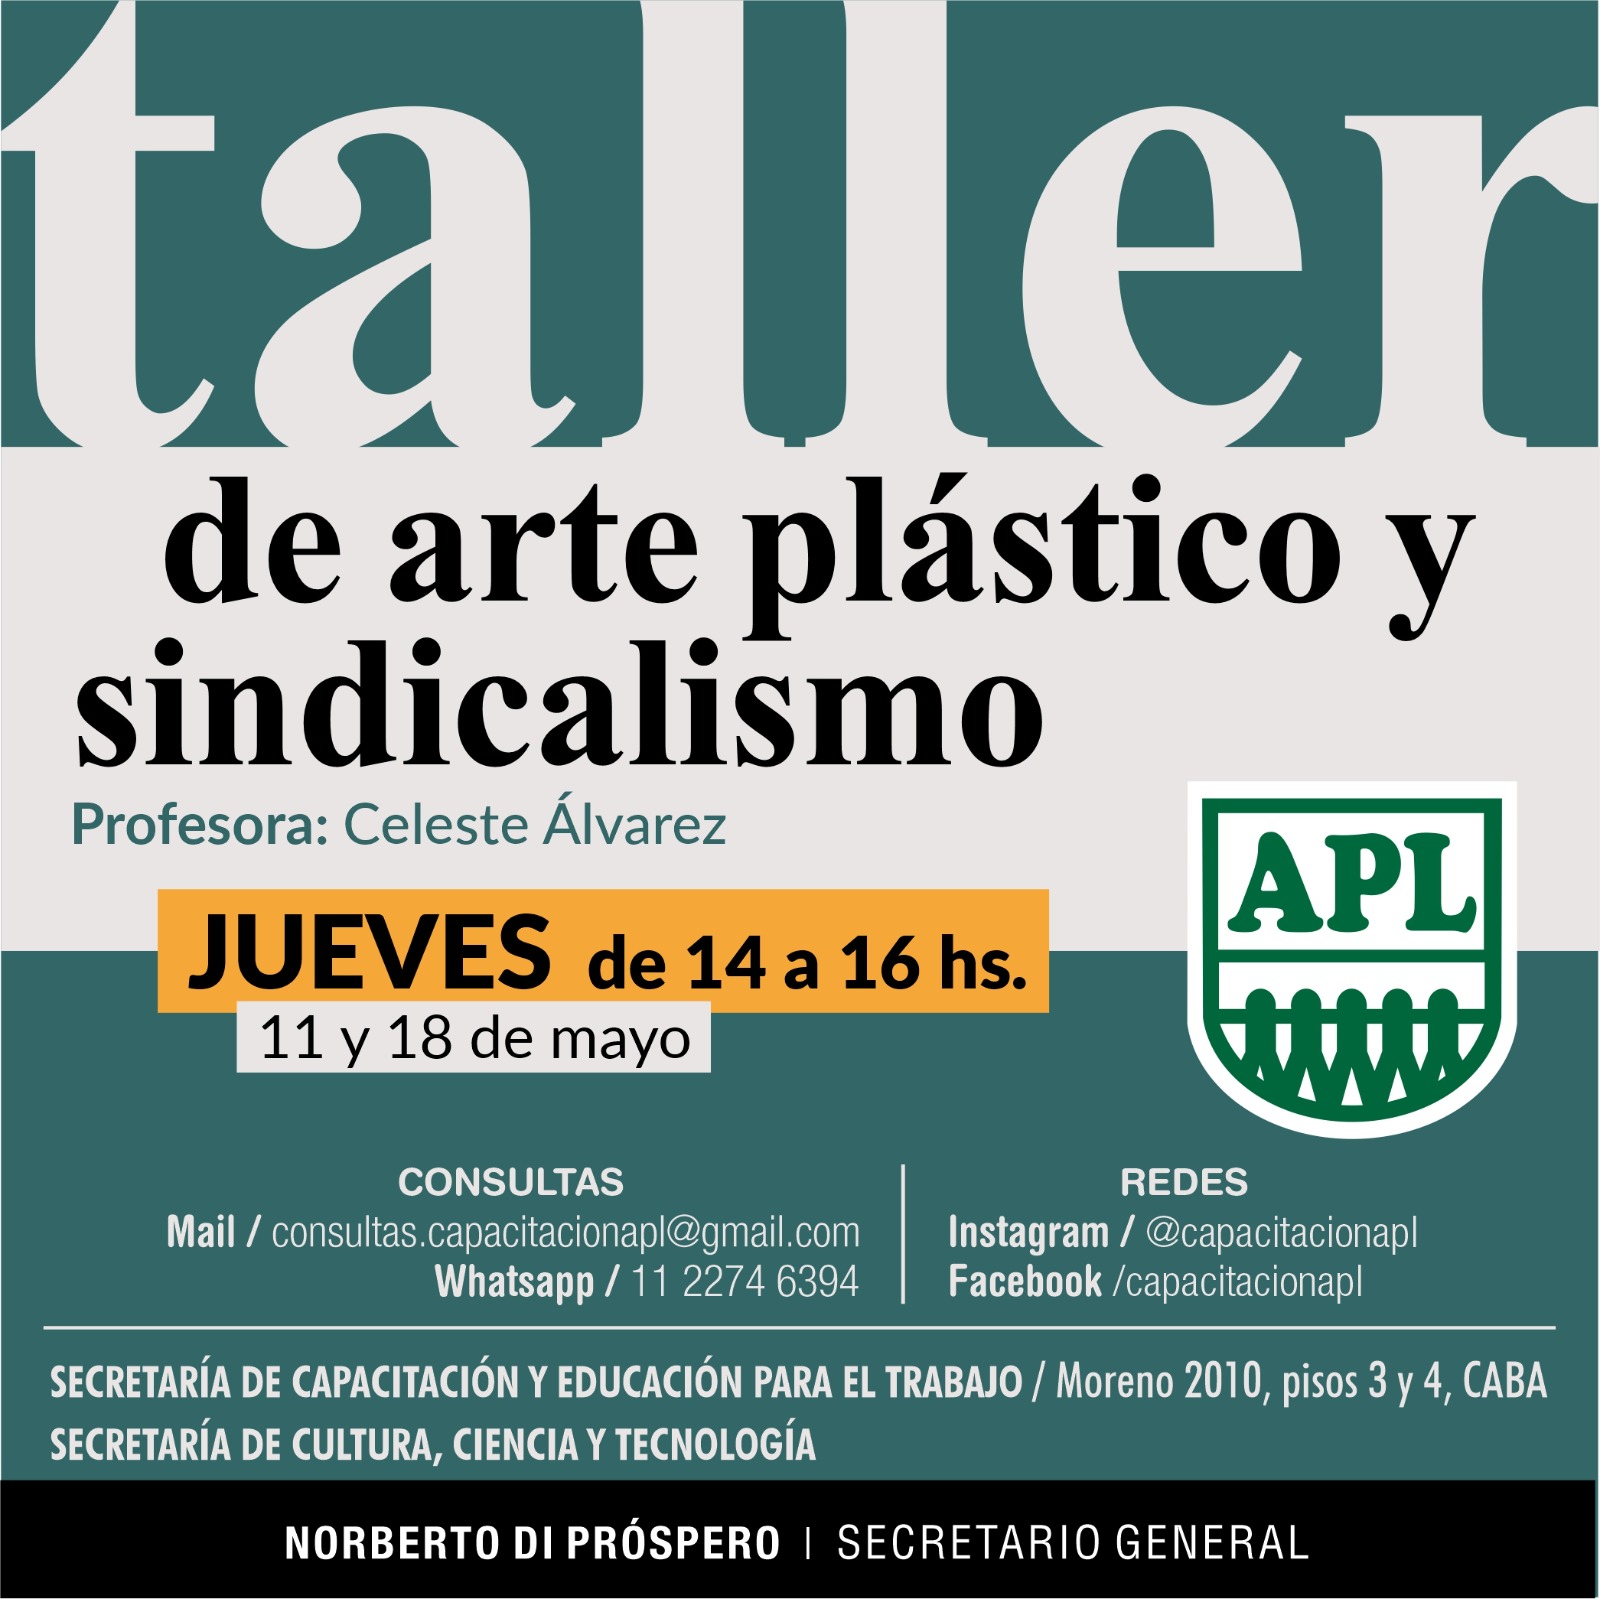 TALLER DE ARTE PLÁSTICO Y SINDICALISMO